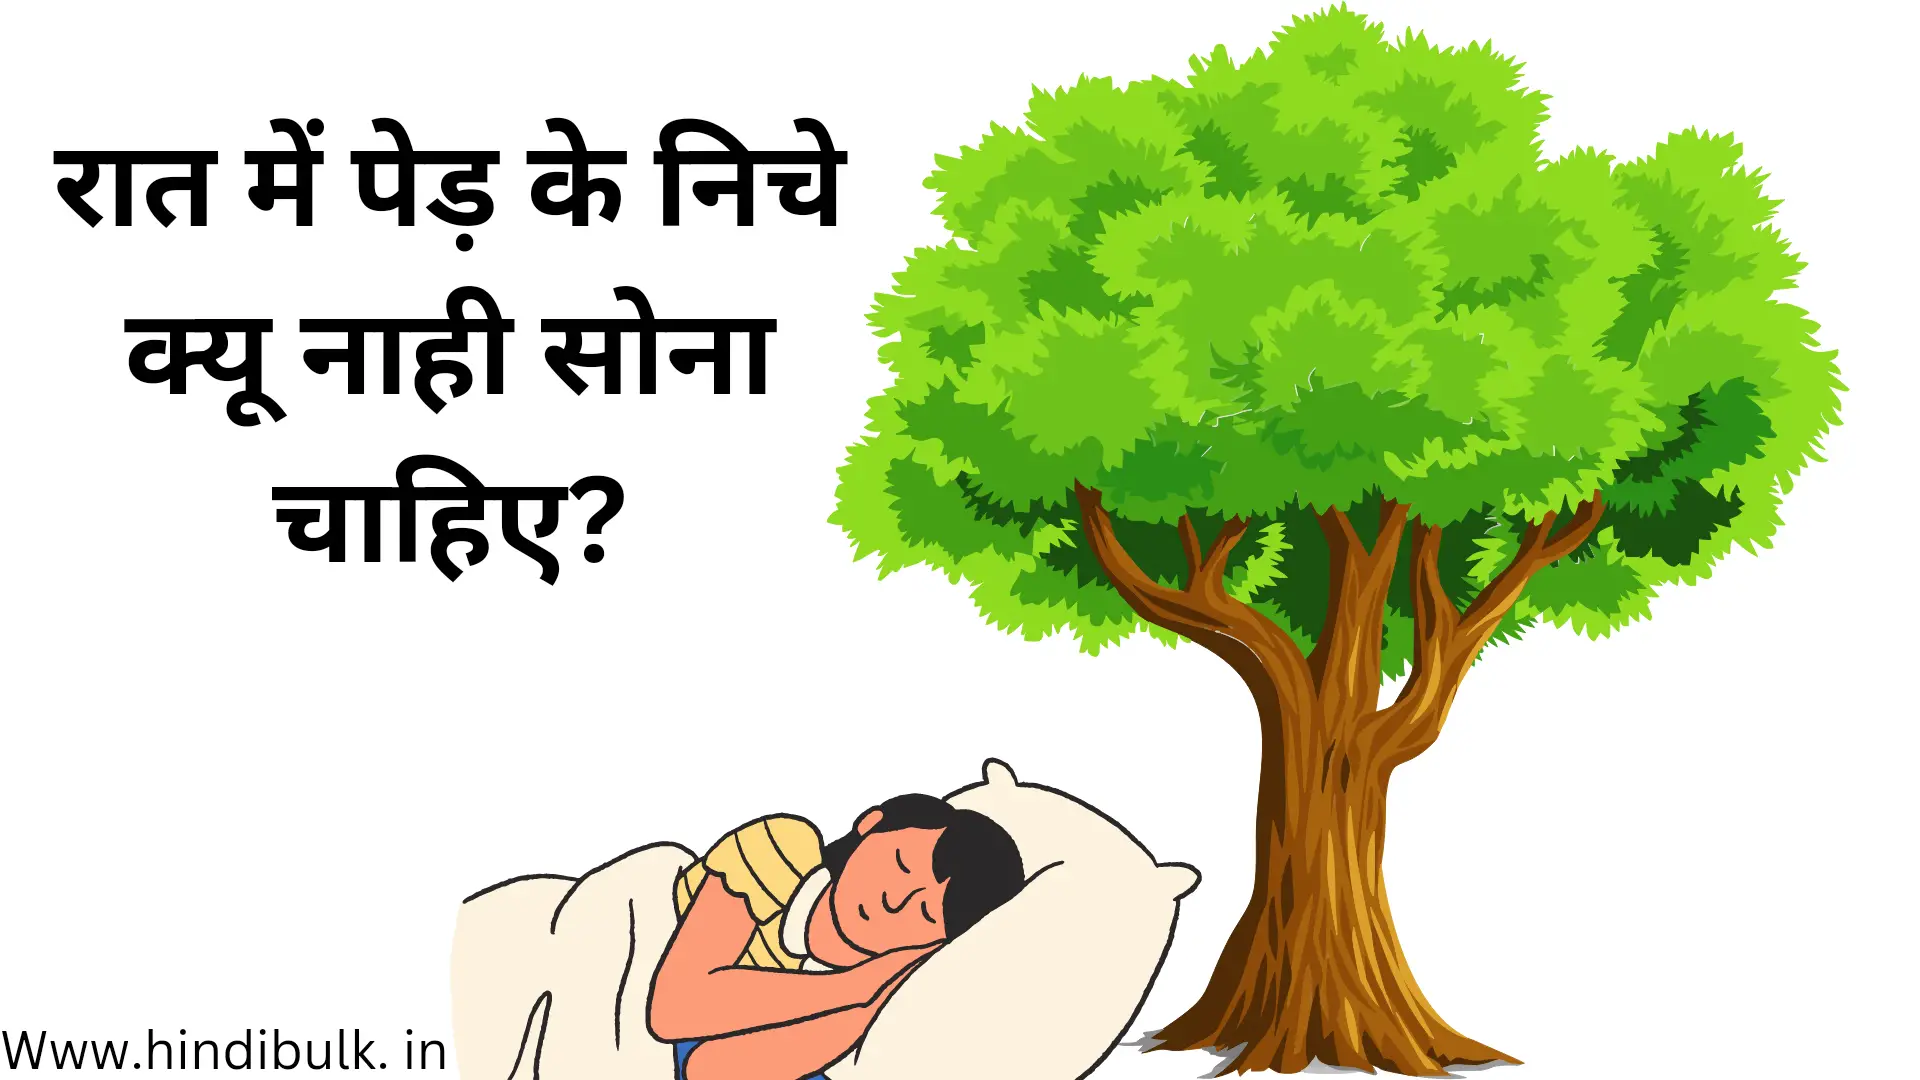 रात में पेड़ के निचे क्यों नहीं सोना चाहिए ? | Why should not sleep under the tree at night?